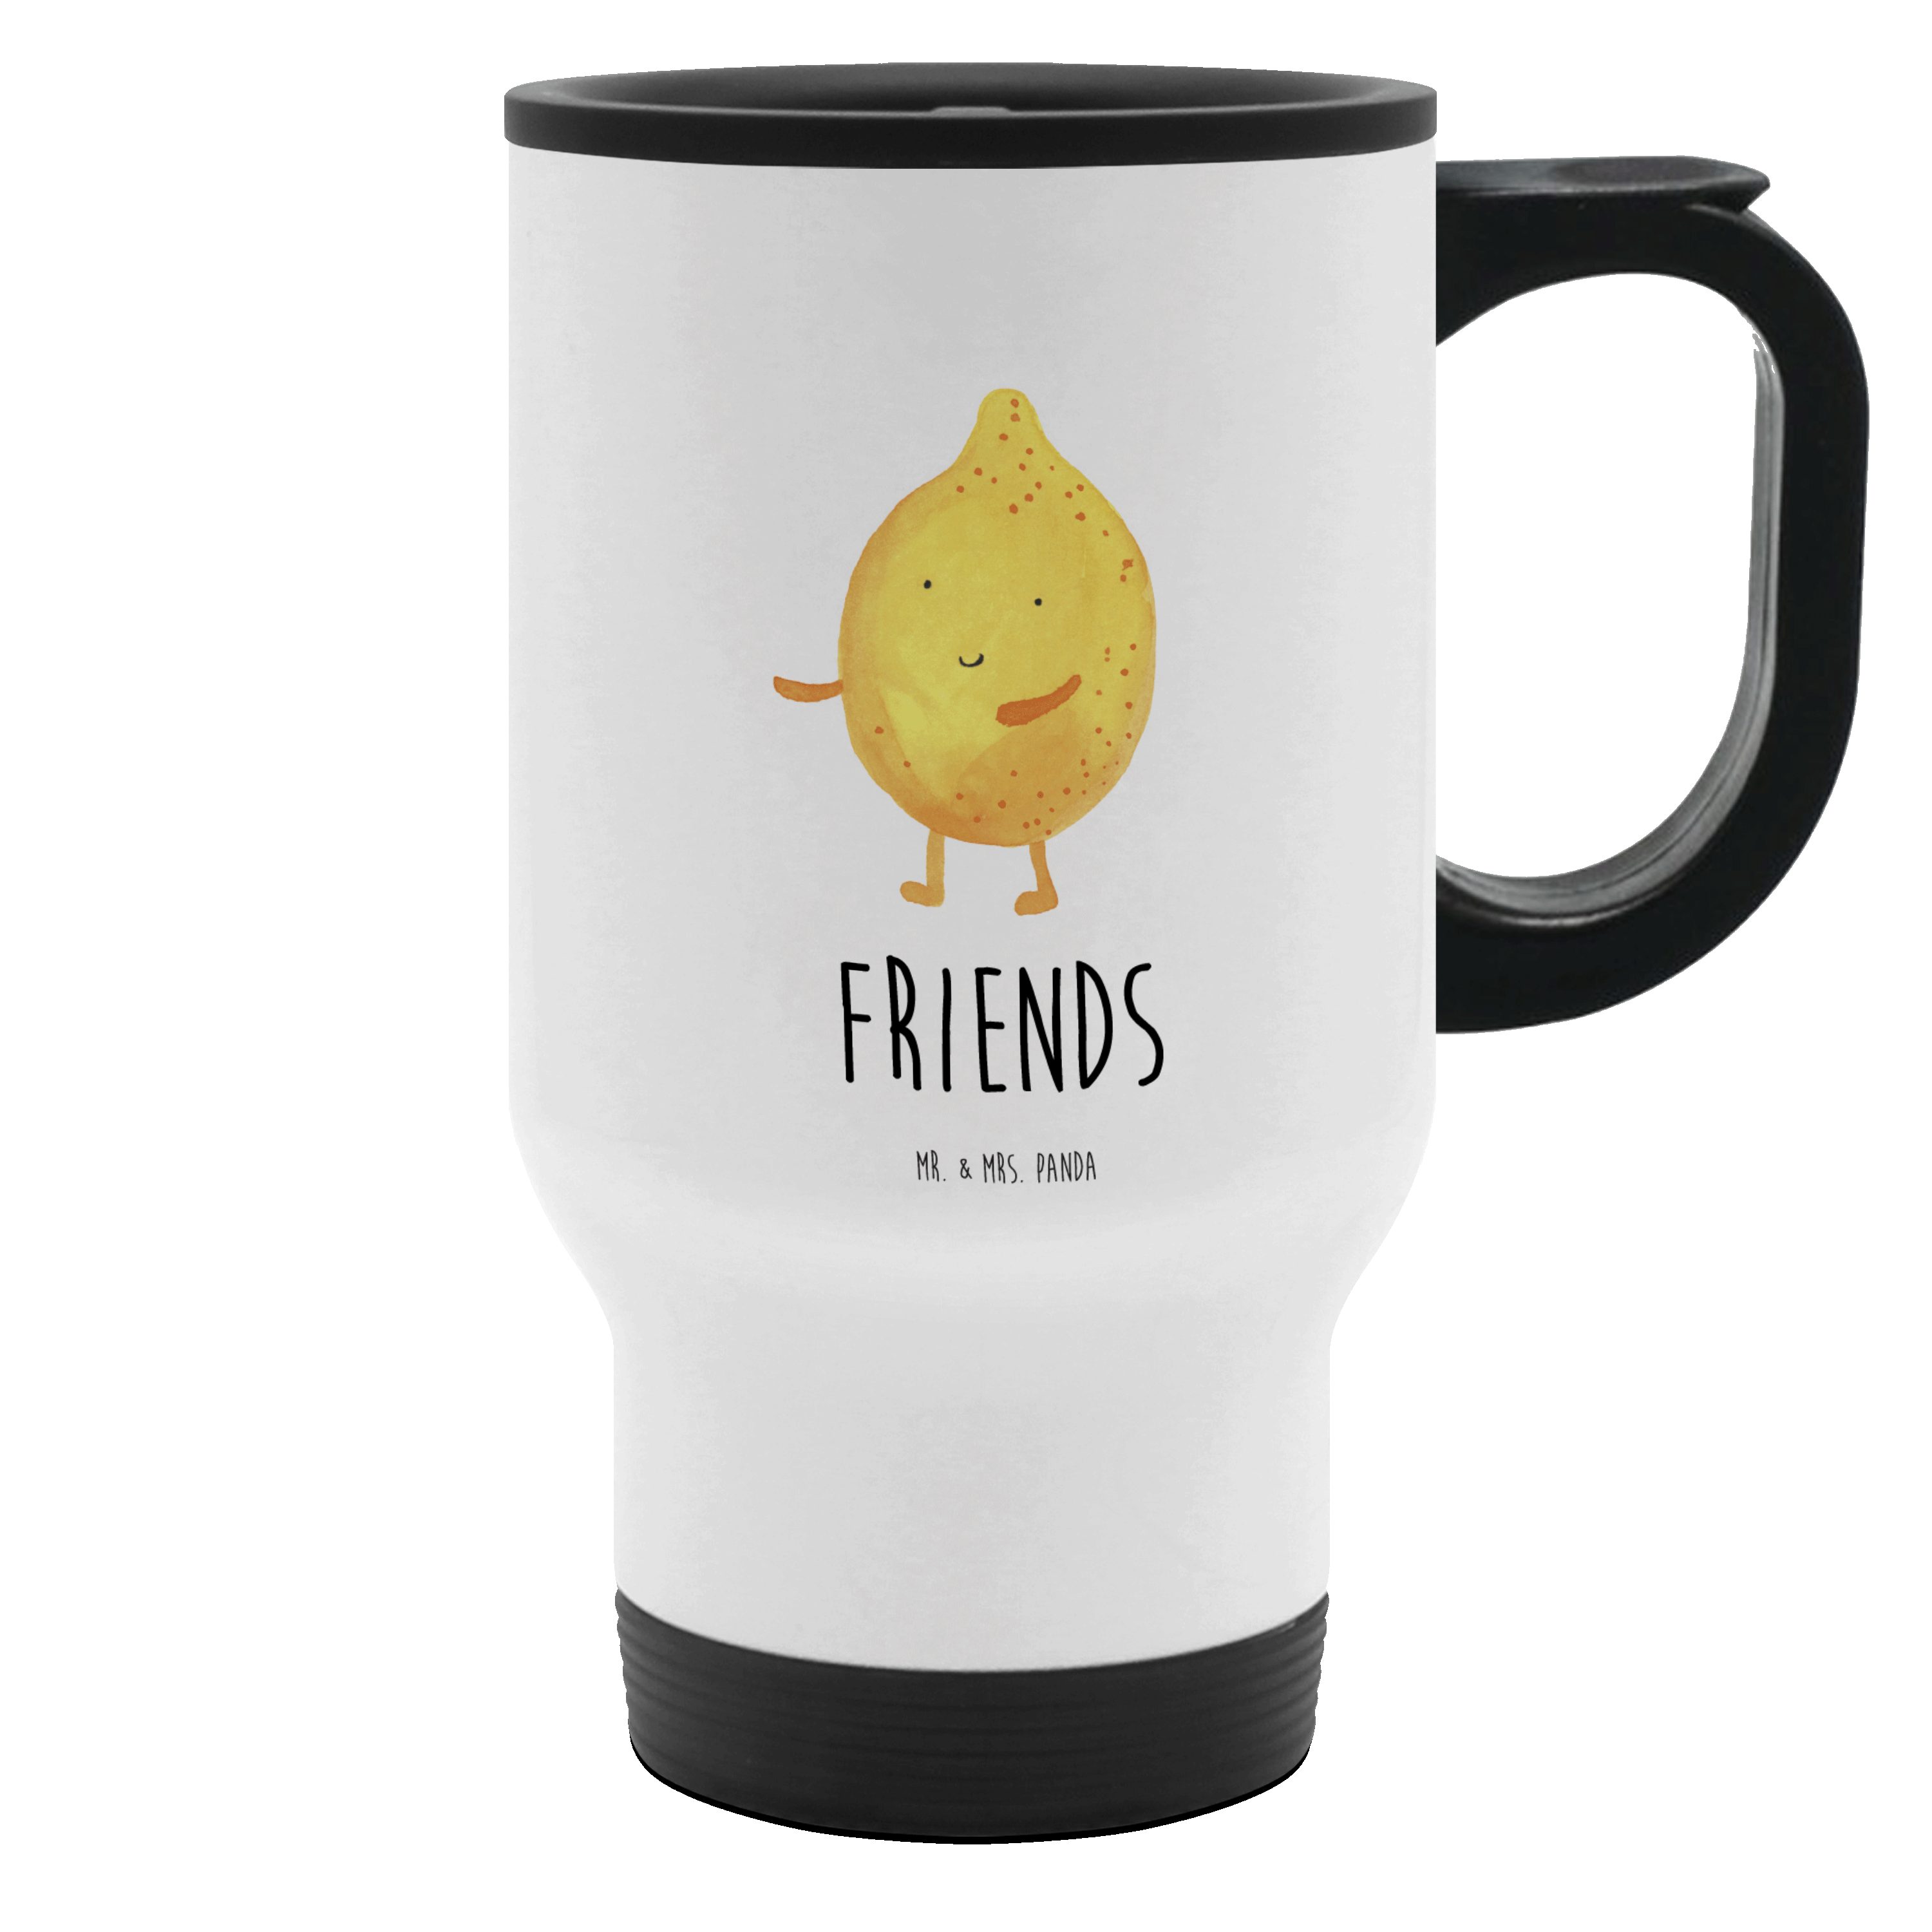 Mr. & Mrs. Panda Thermobecher BestFriends-Lemon - Weiß - Geschenk, Tasse zum Mitnehmen, Kaffeetasse, Edelstahl